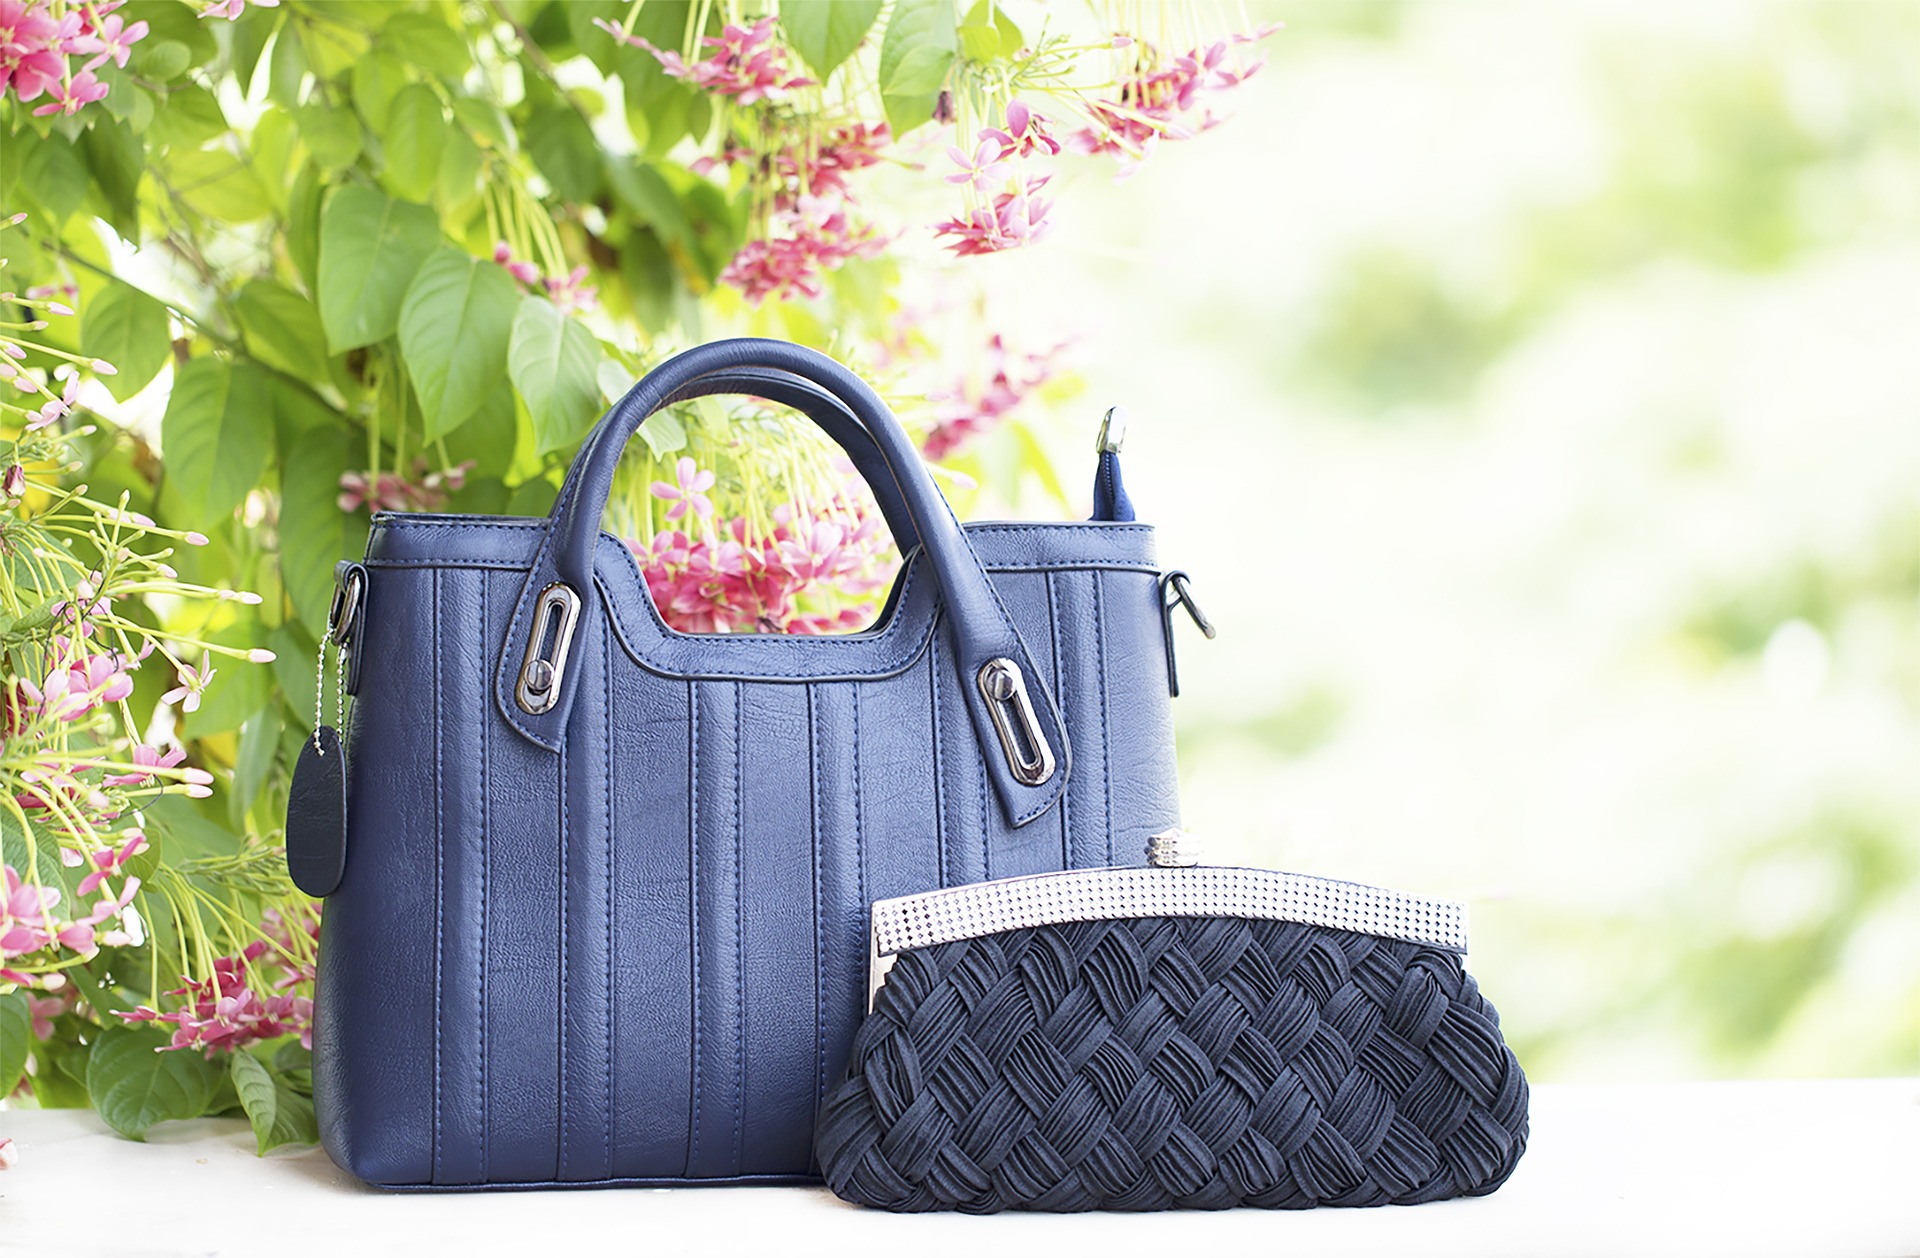 Diana Korr Handbags - Buy Diana Korr Handbags Online | Myntra